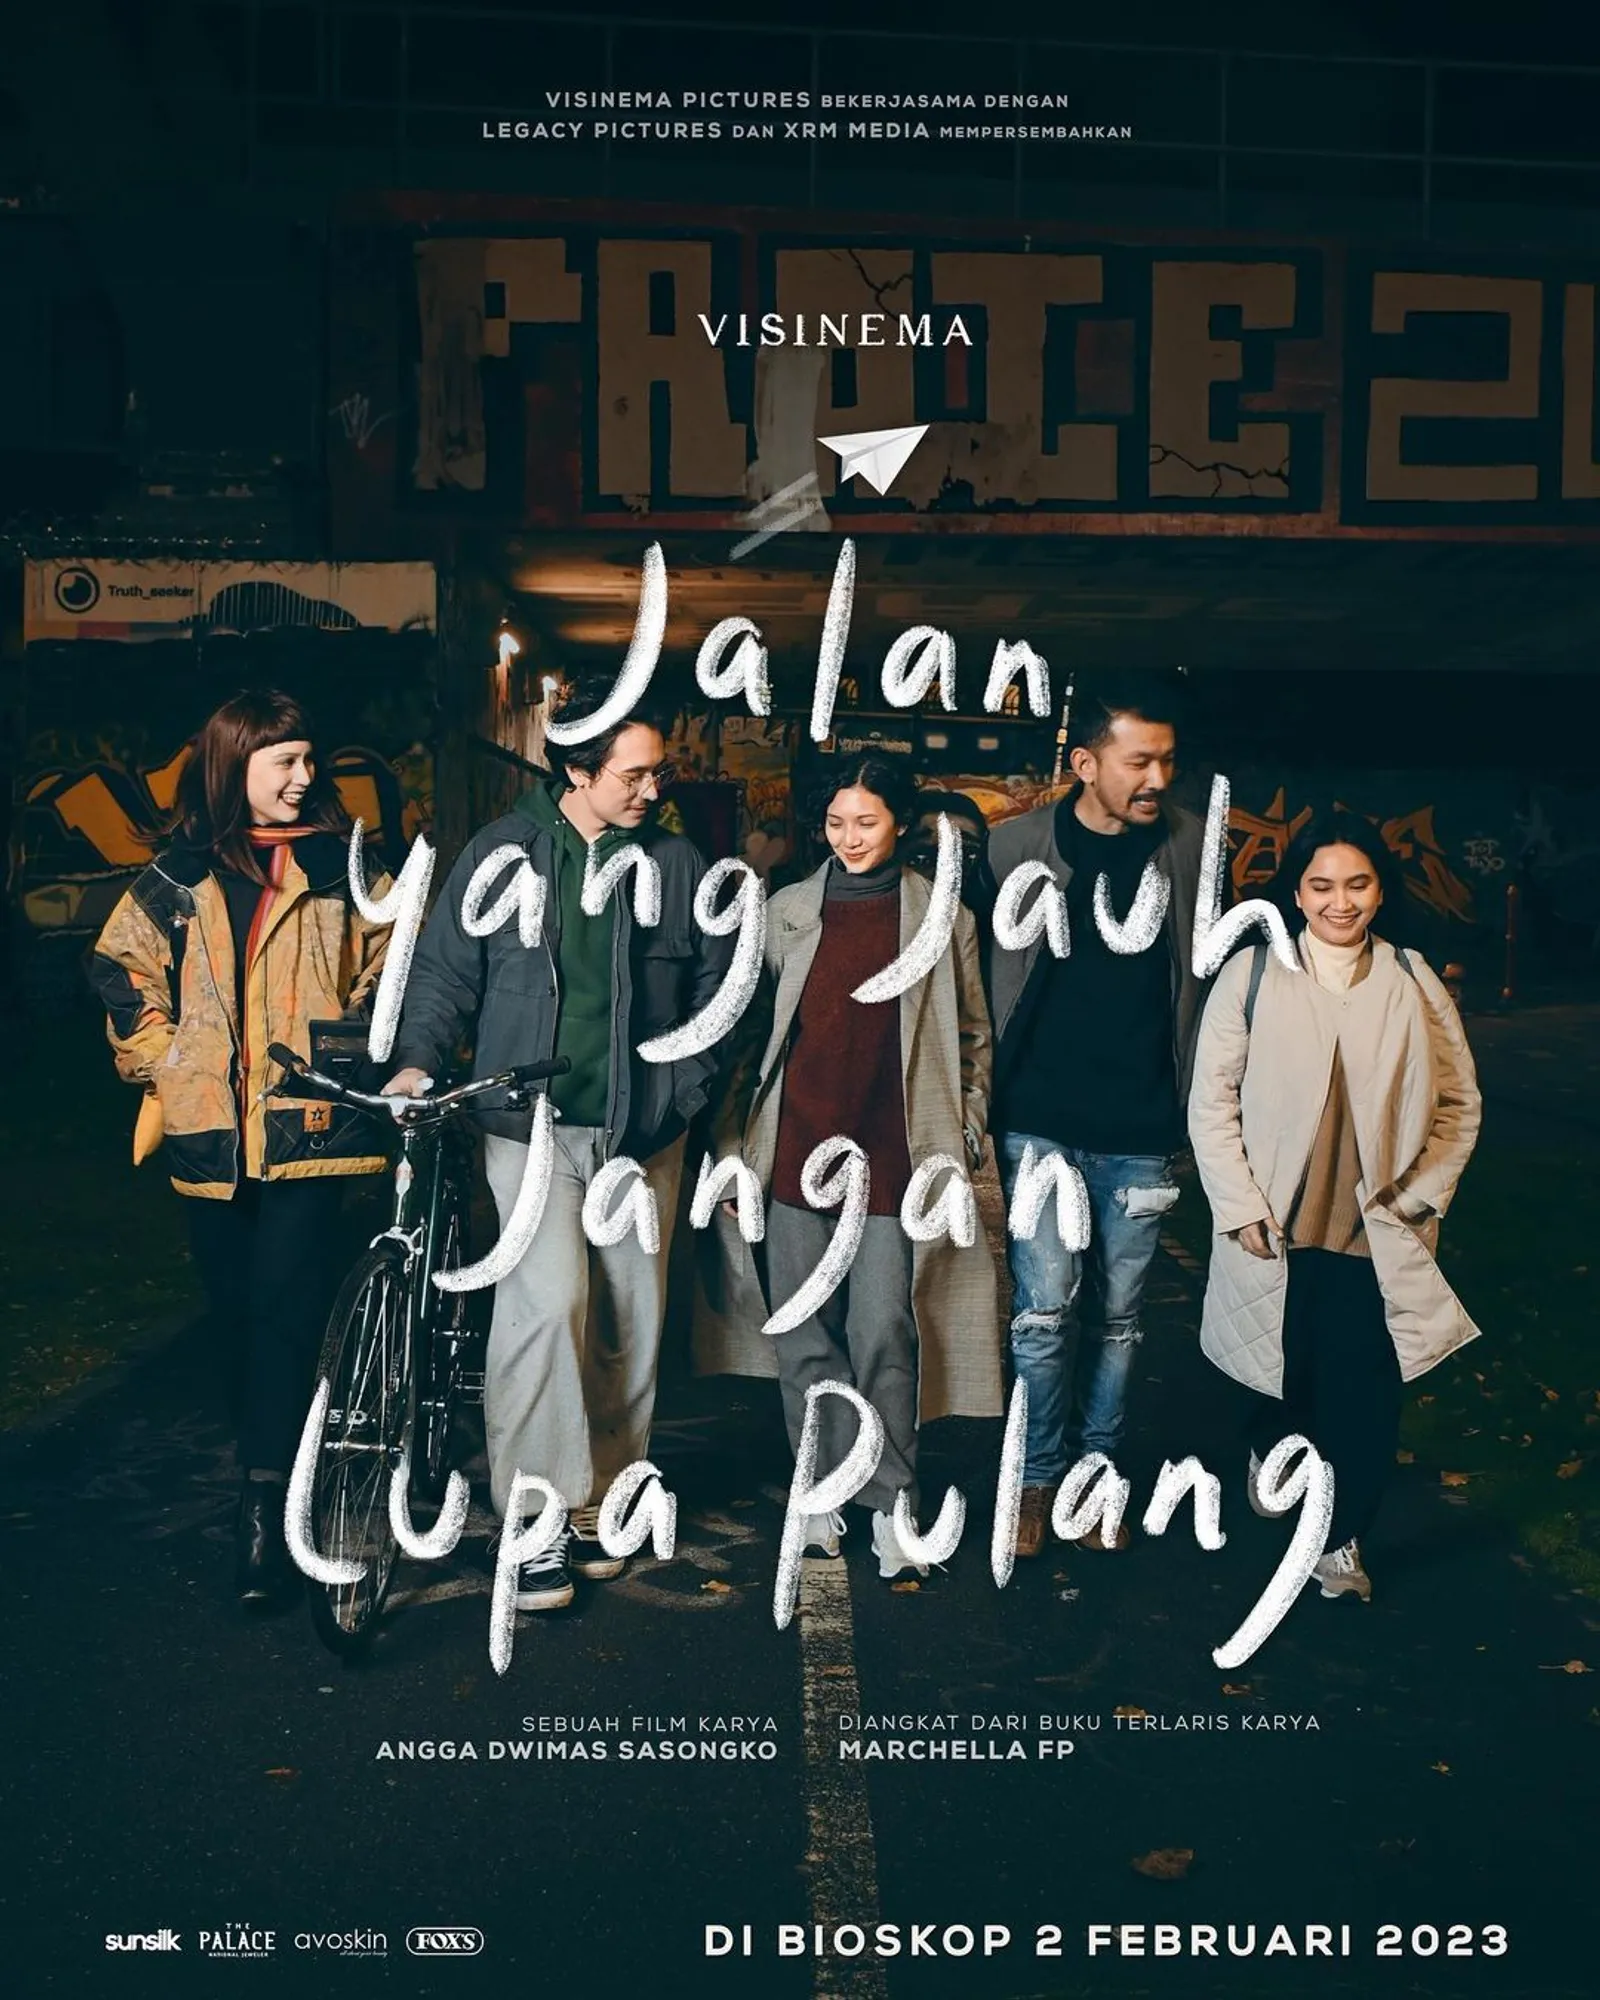 Proses Kreatif & Makna Lagu Terbaru Yura Yunita "Jalan Pulang"